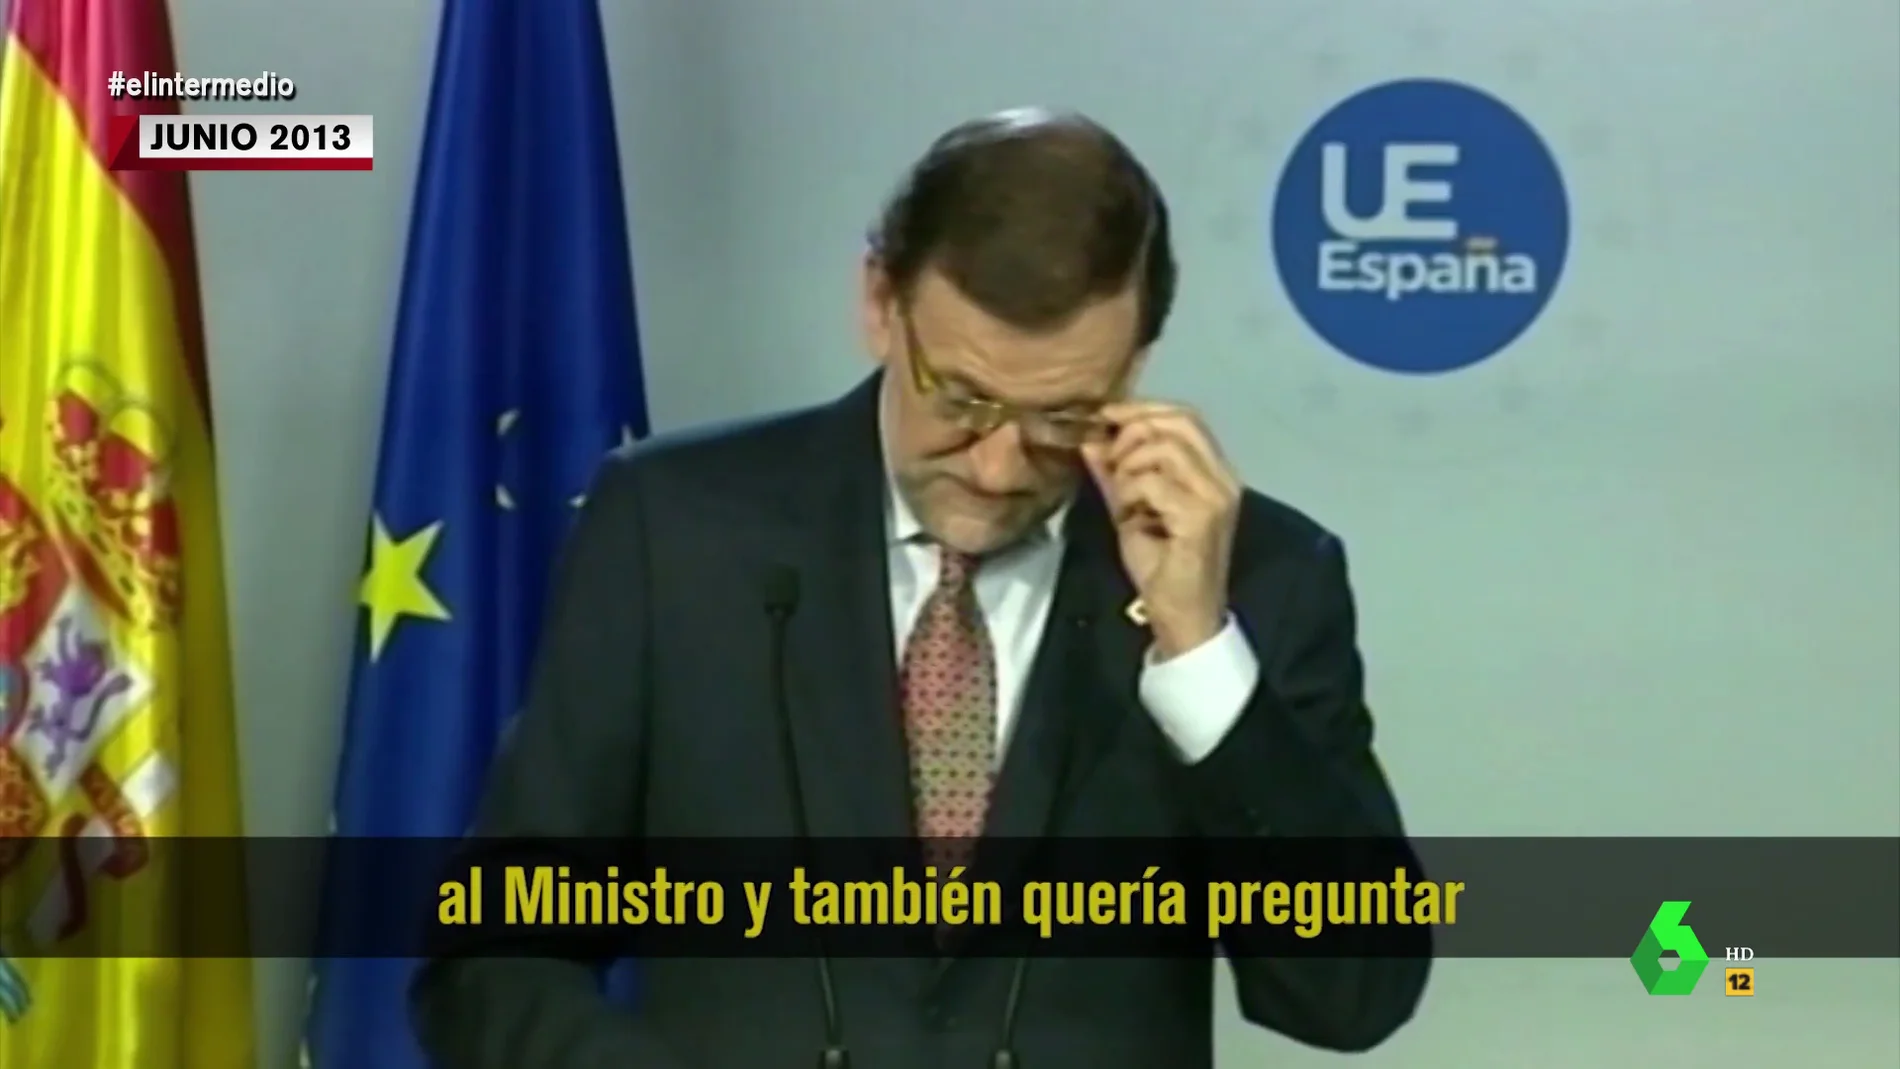 "La segunda ya tal" de Rajoy y otros surrealistas argumentos del PP para defenderse de la corrupción